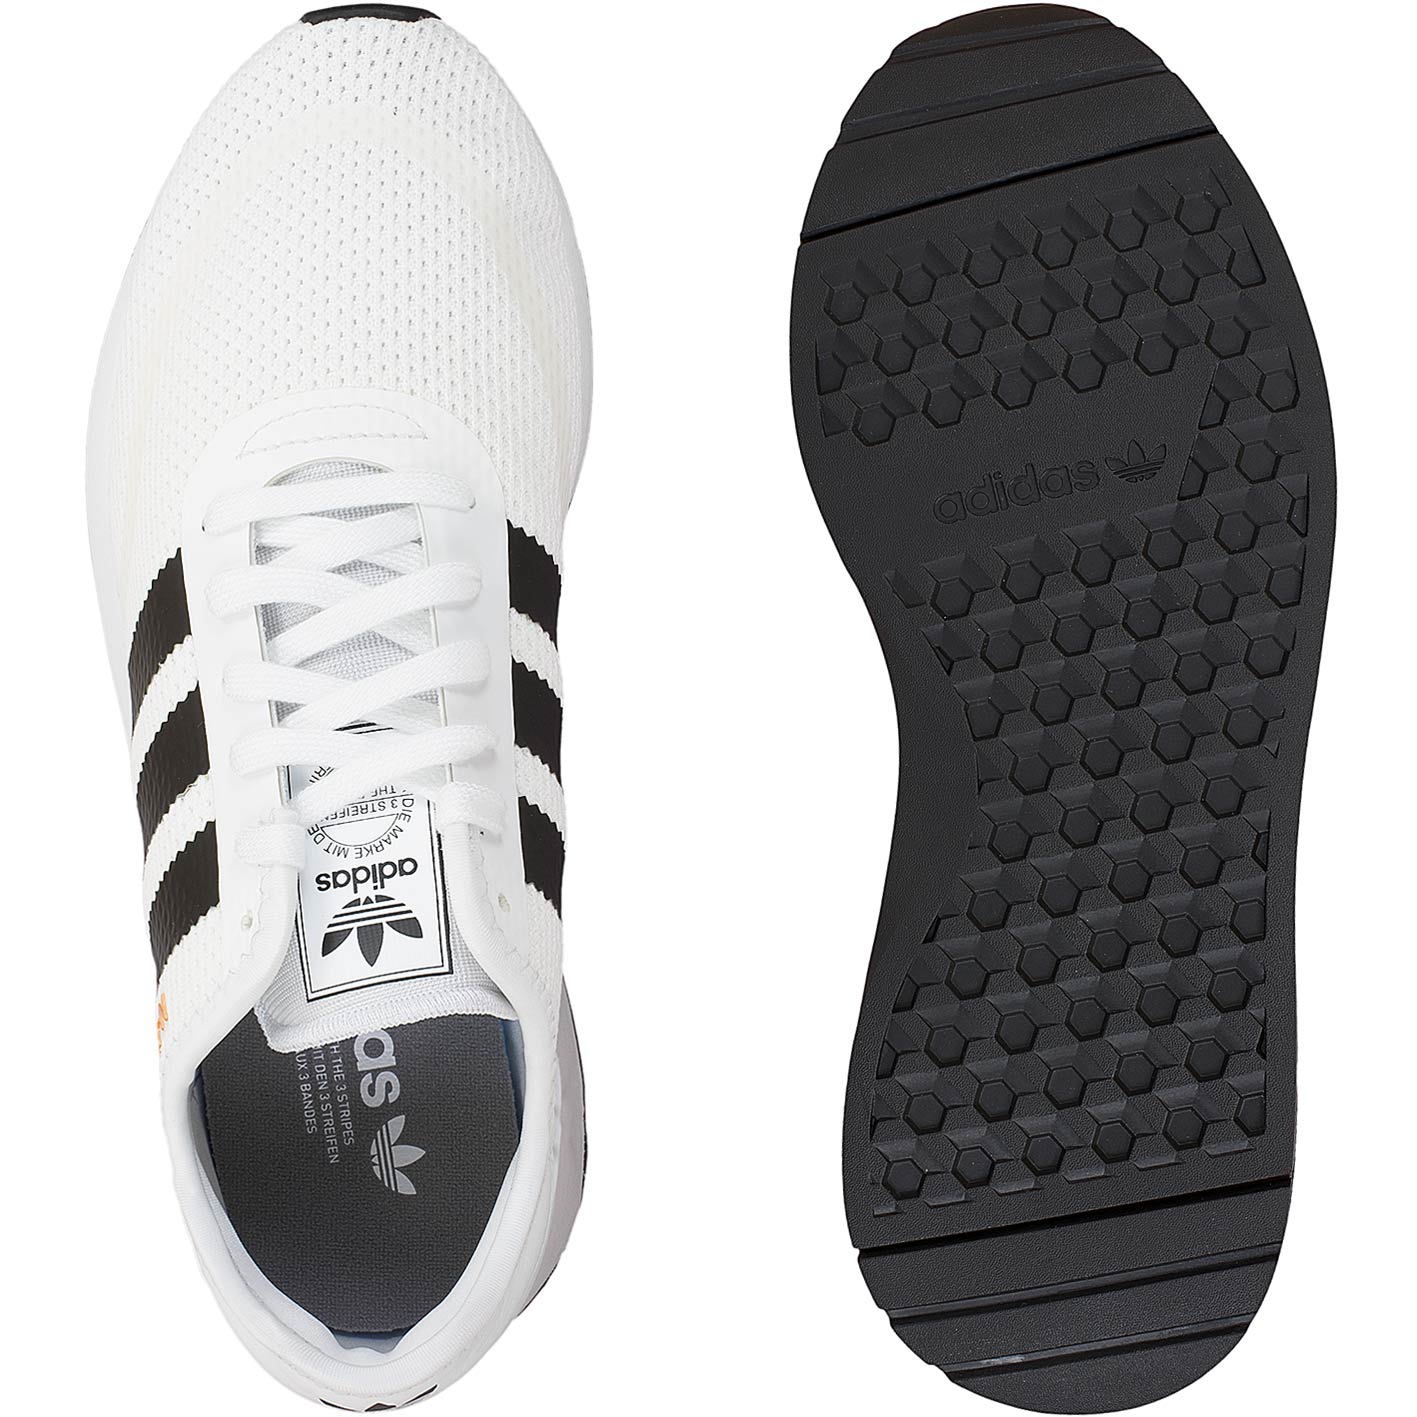 ☆ Adidas Originals N-5923 weiß/schwarz bestellen!